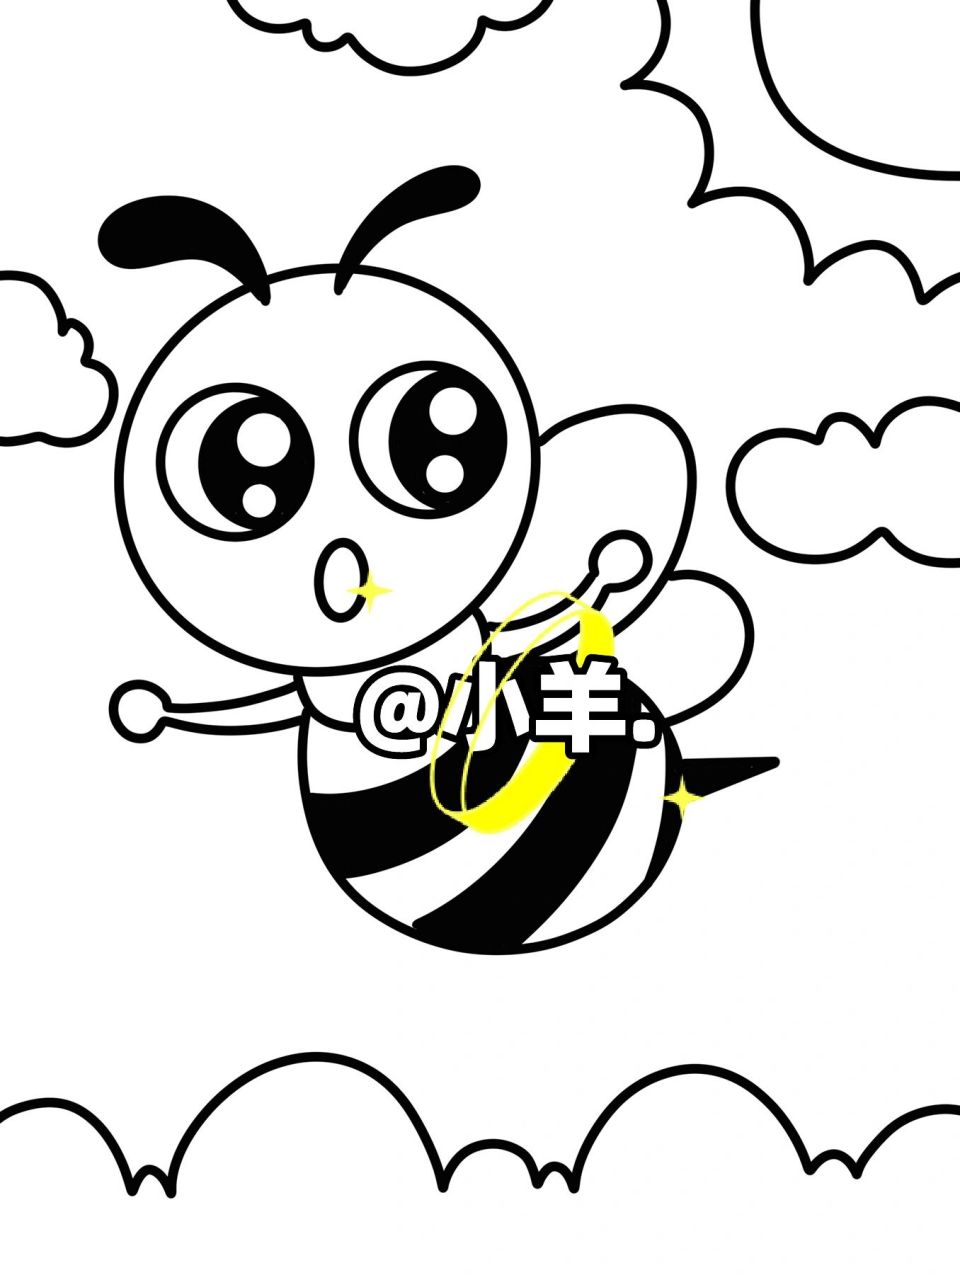 画蜜蜂的简笔画 简单图片